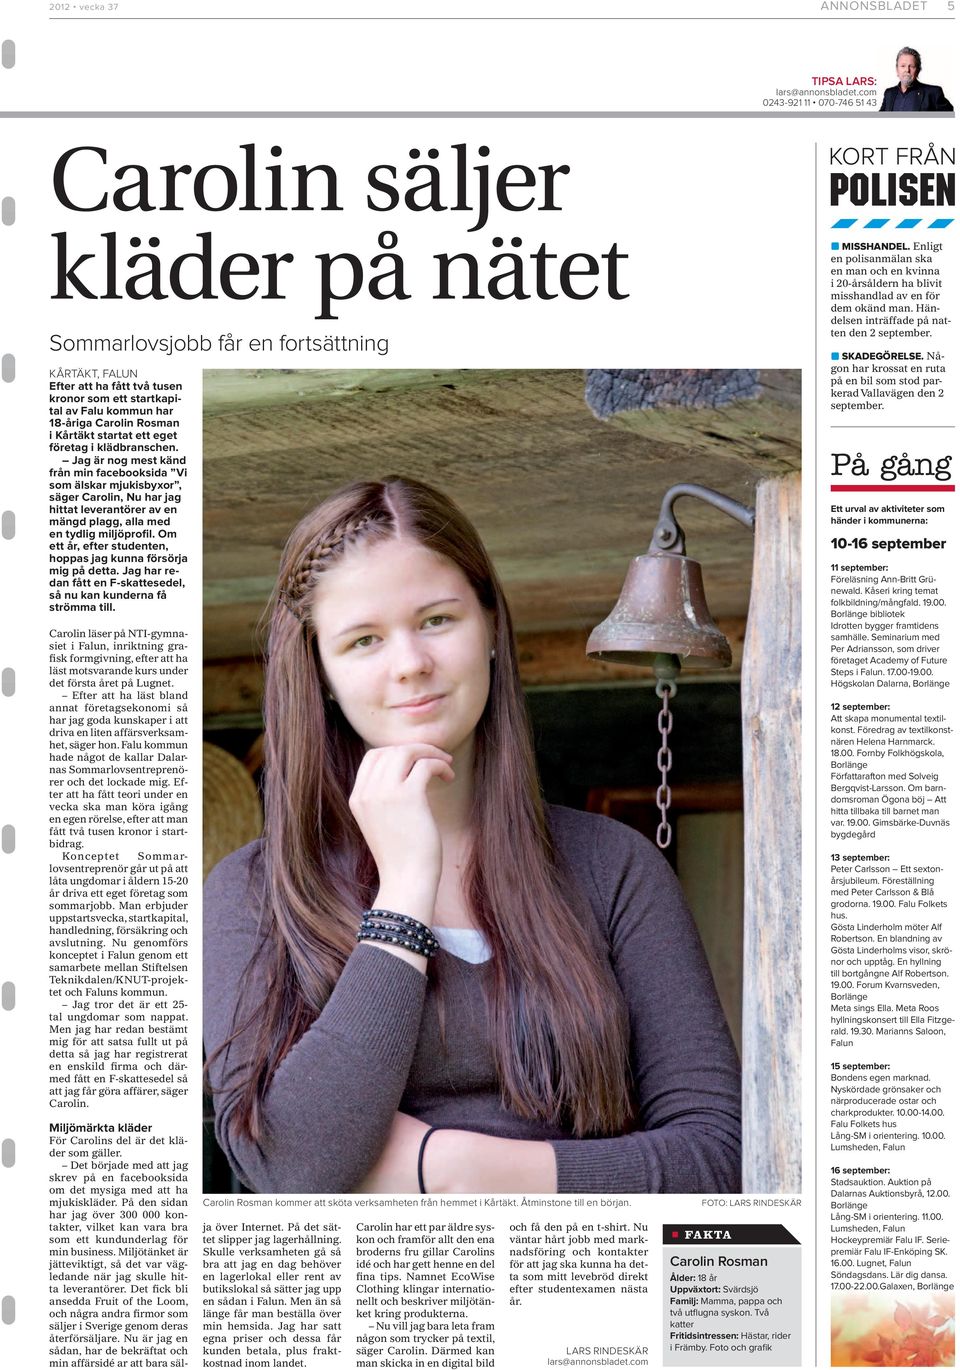 Carolin Rosman i Kårtäkt startat ett eget företag i klädbranschen.